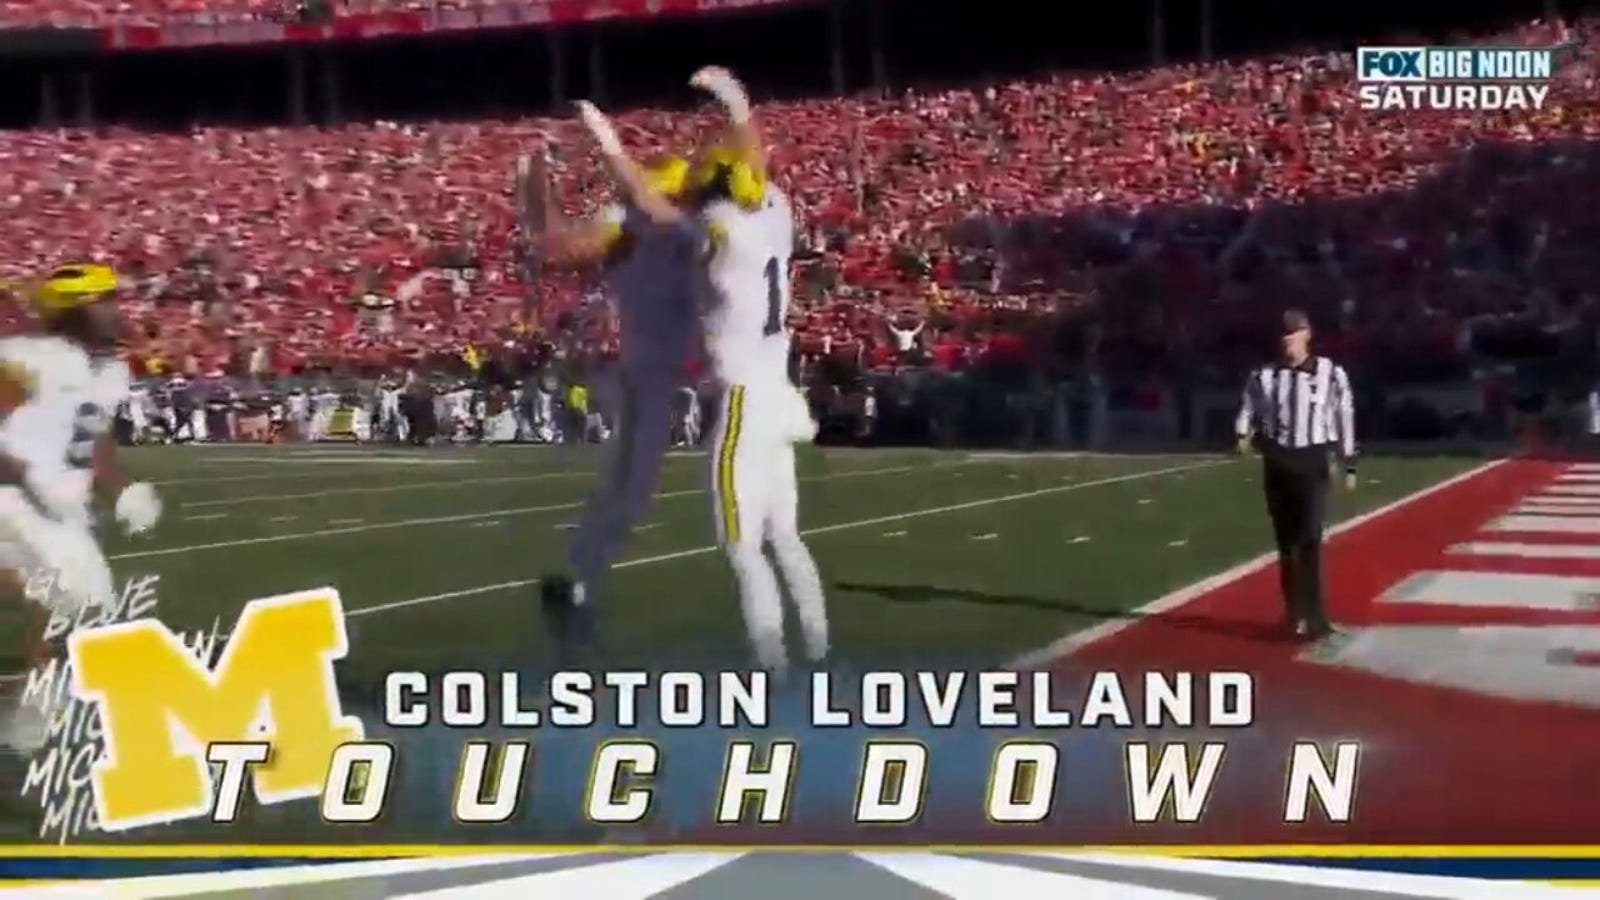 JJ McCarthy del Michigan ha colpito Colston Loveland per un touchdown di 45 yard